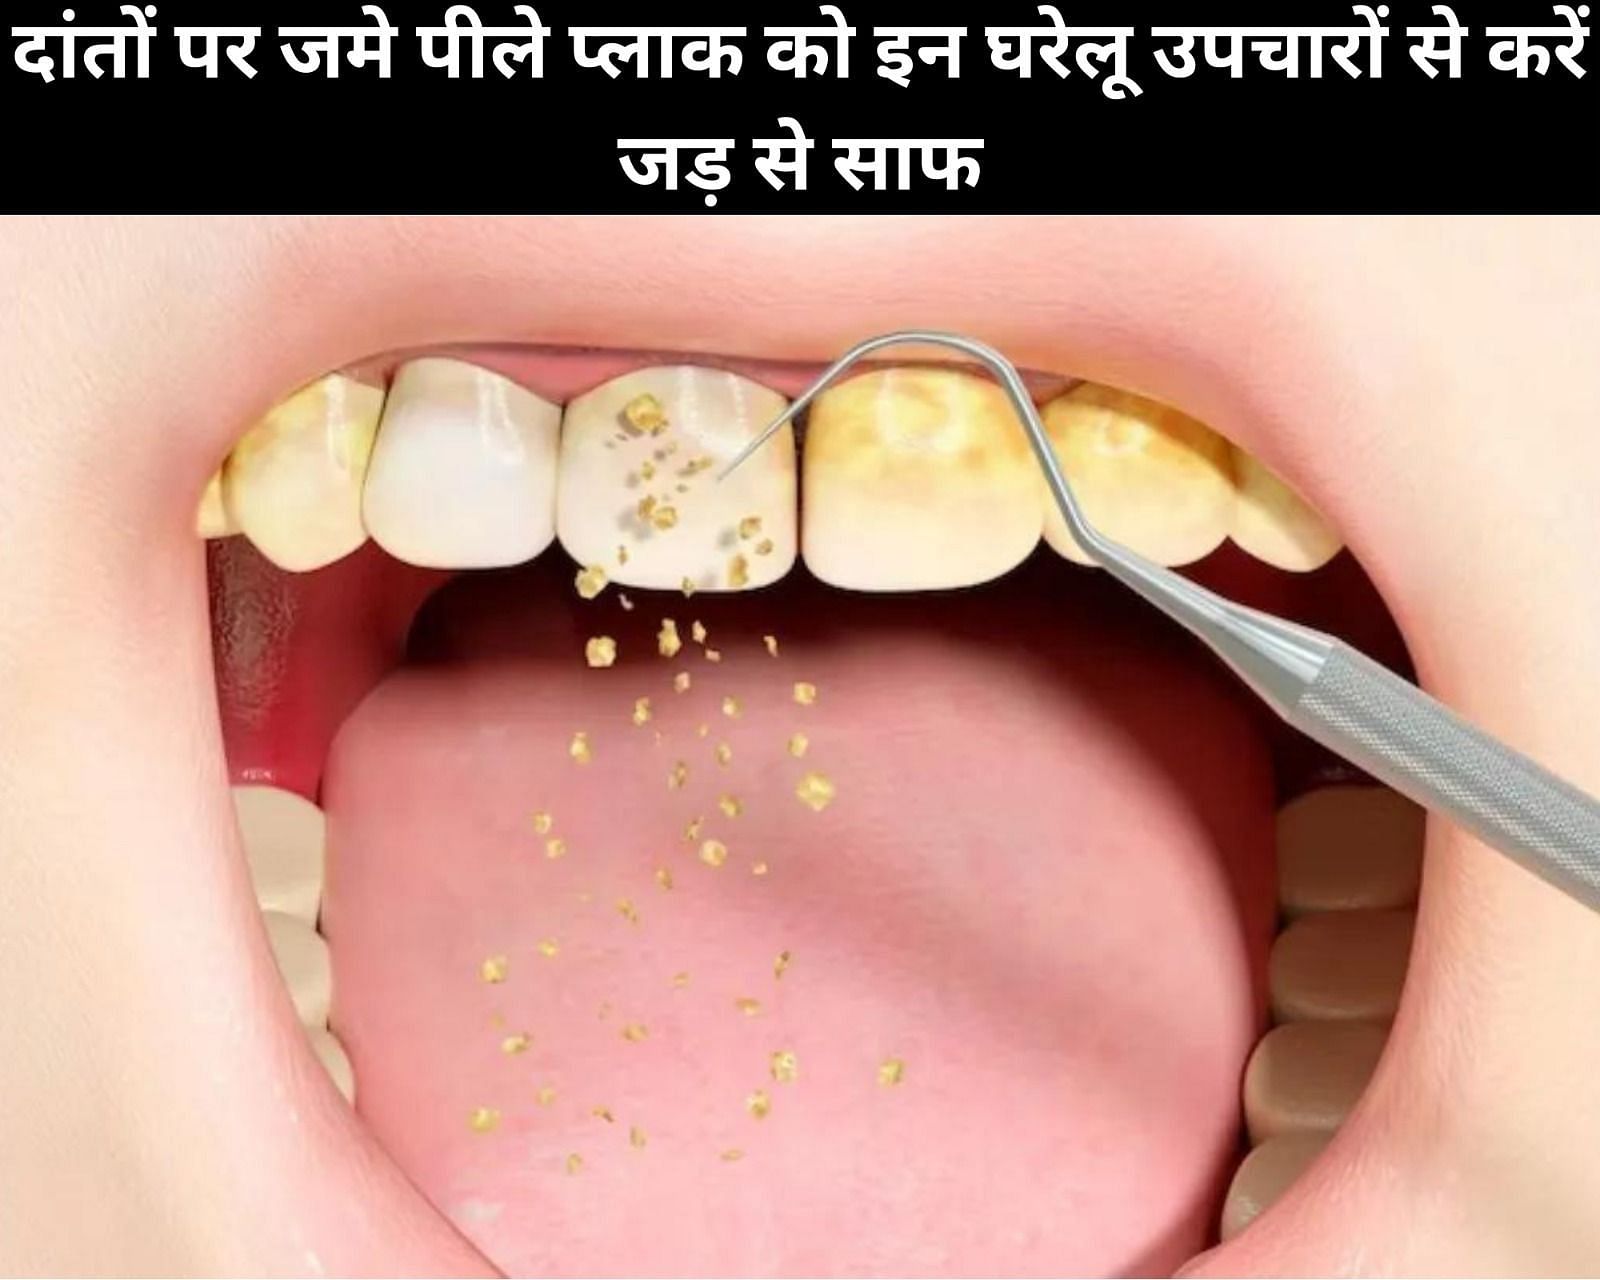 दांतों पर जमे पीले प्लाक को इन 5 घरेलू उपचारों से करें जड़ से साफ (फोटो - sportskeedaहिन्दी)